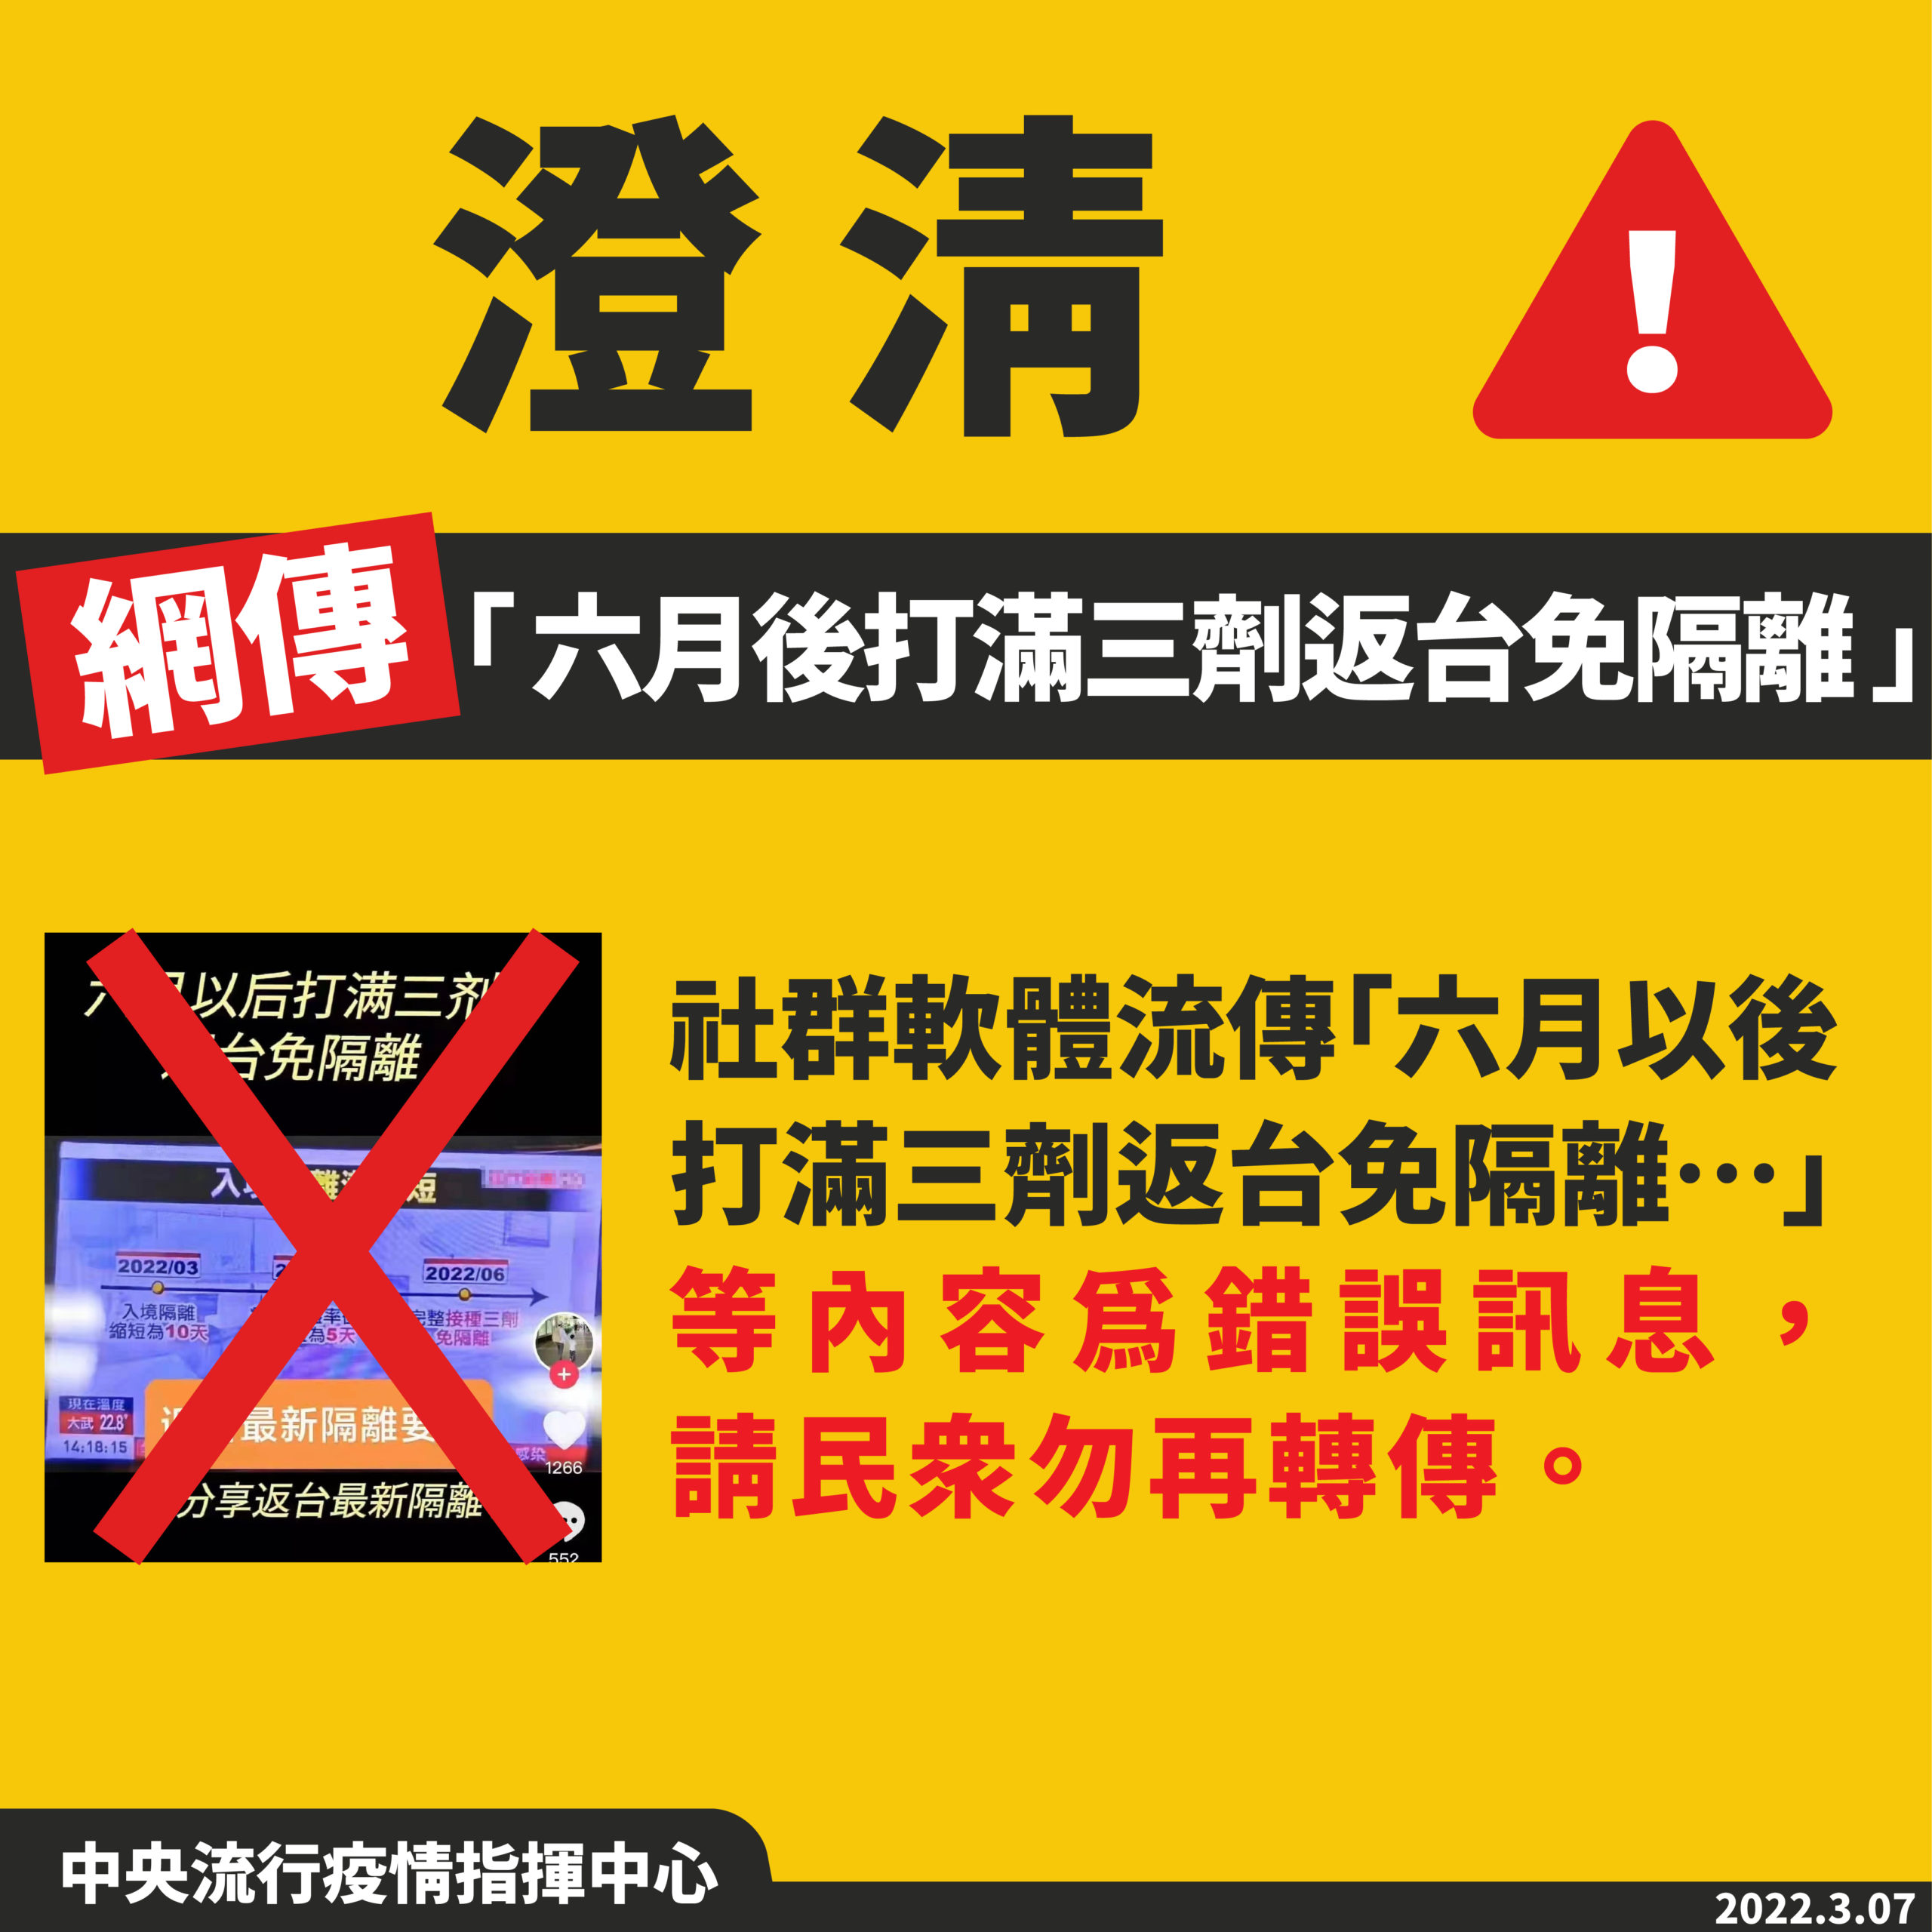 台湾NEWS: 「ワクチン3回接種し6月以降に帰台する場合、隔離は免除」はデマです